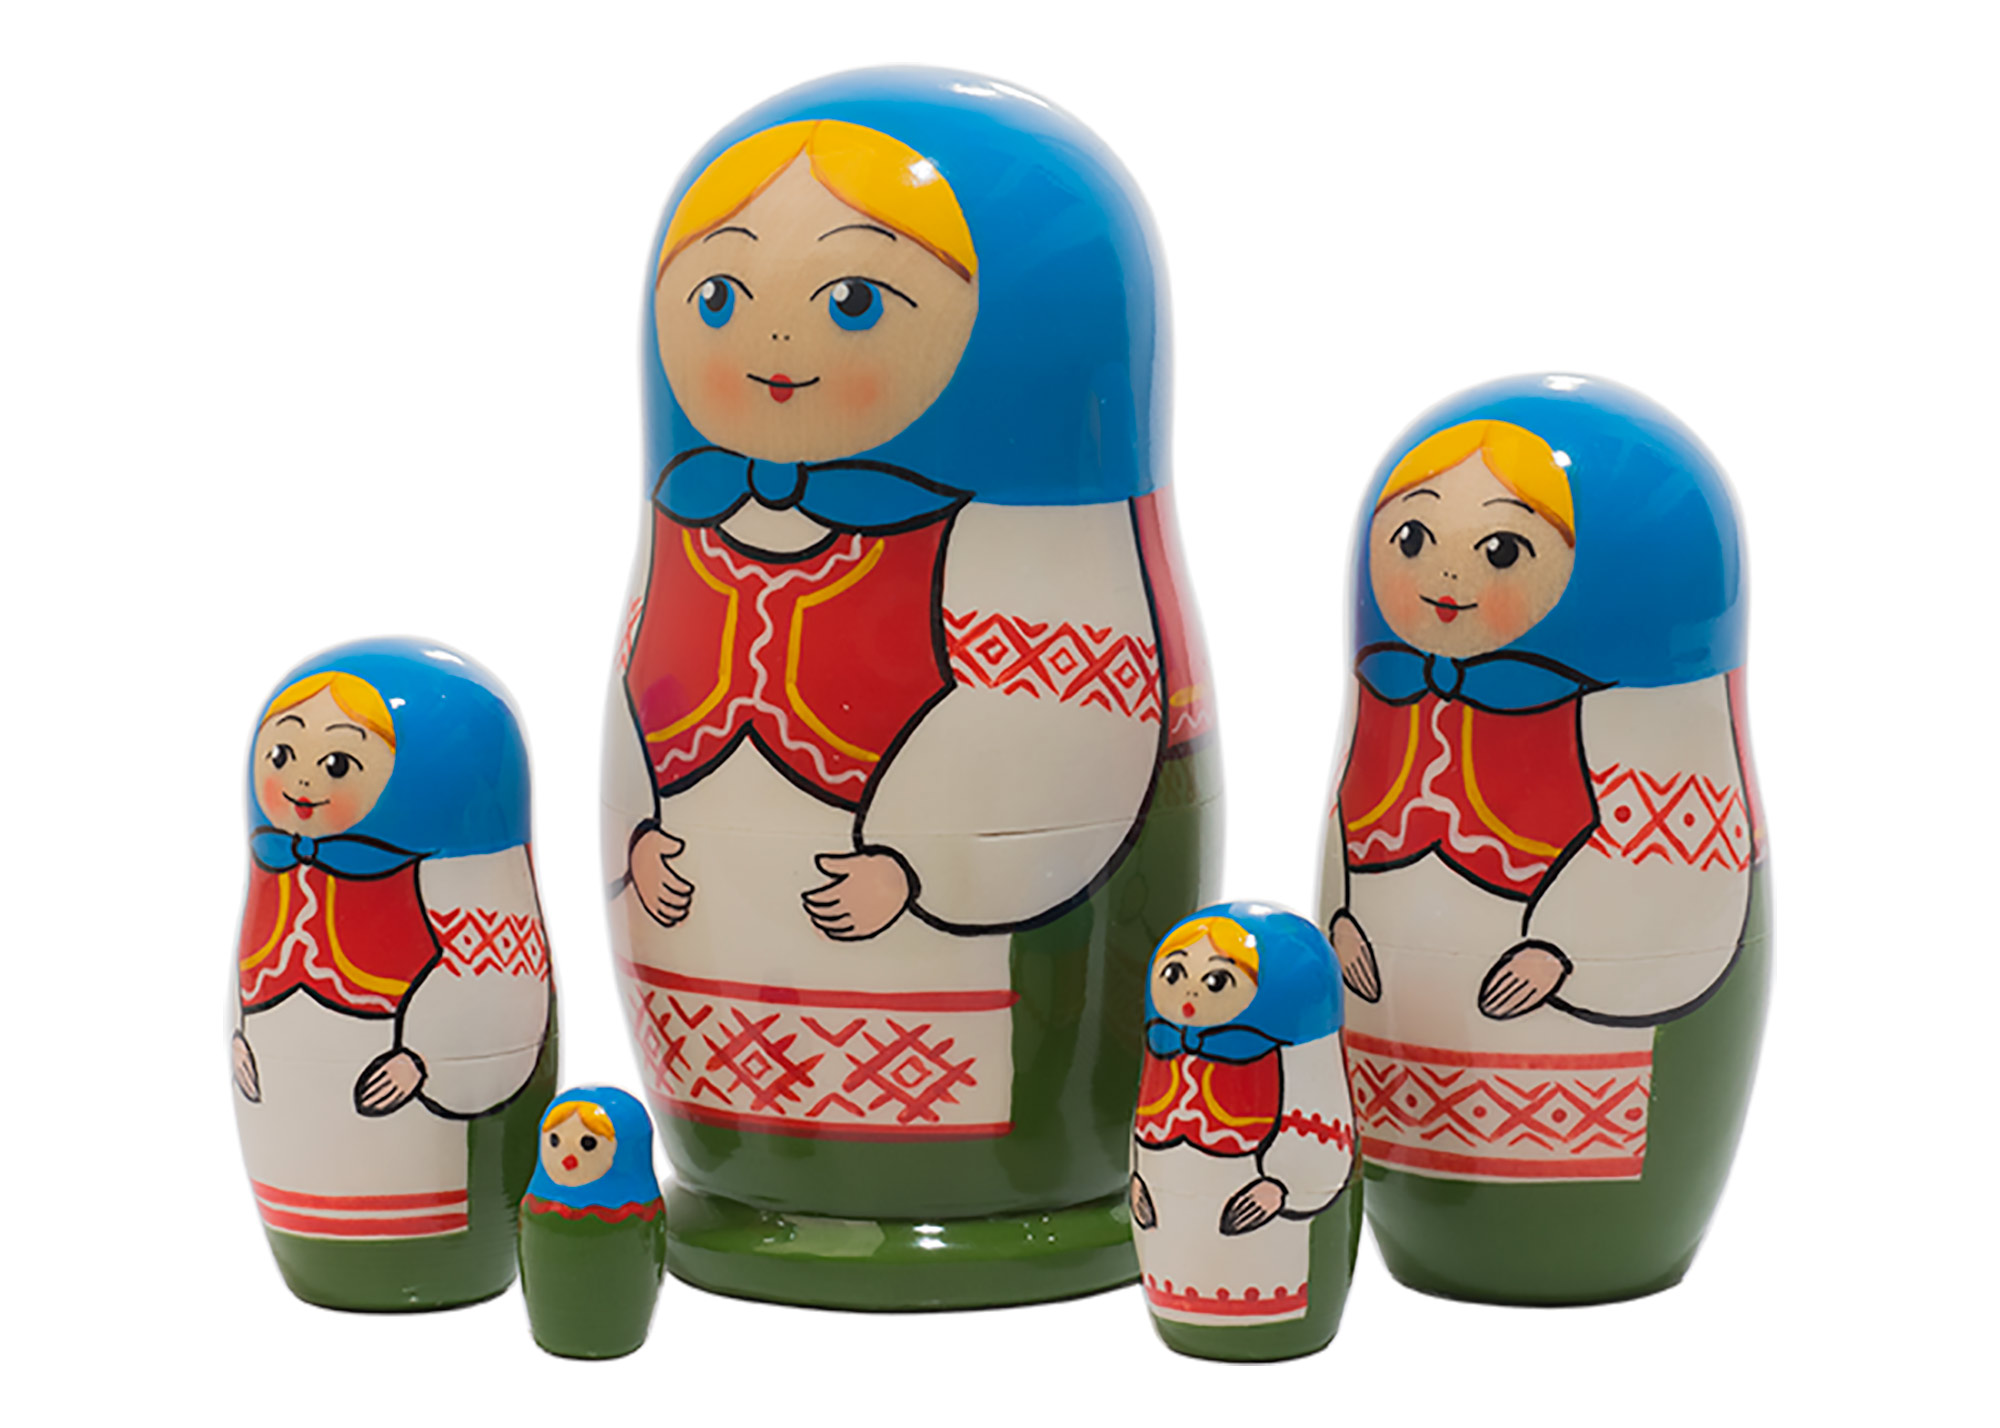 Buy Belarus Folk Nesting Doll 5pc./4.25" at GoldenCockerel.com